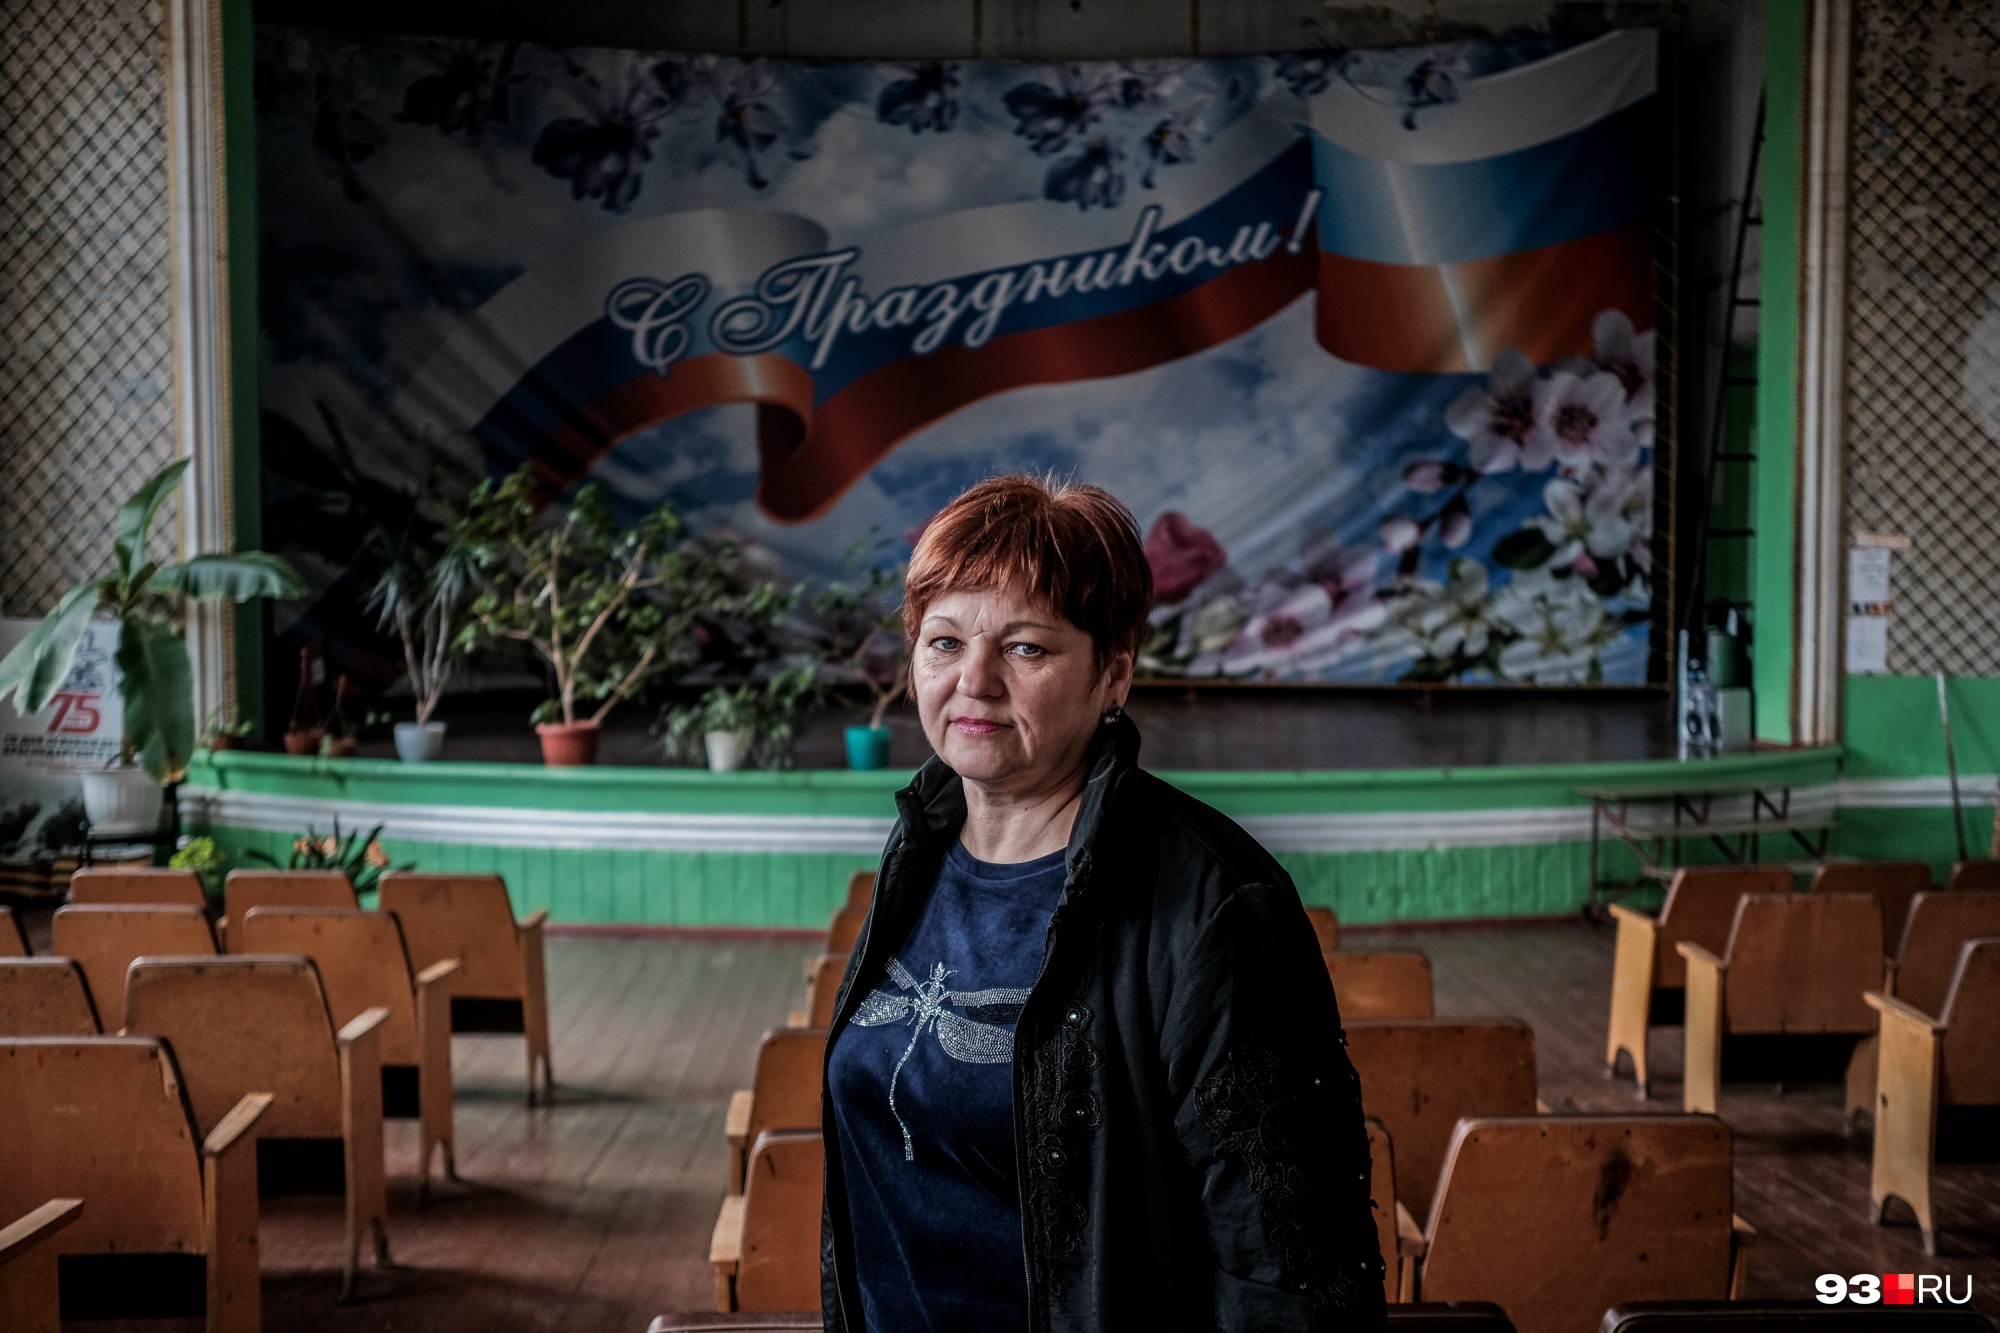 Заведующая сельским клубом Альбина Черепнева в своей «прошлой жизни» в Магаданской области работала парикмахером